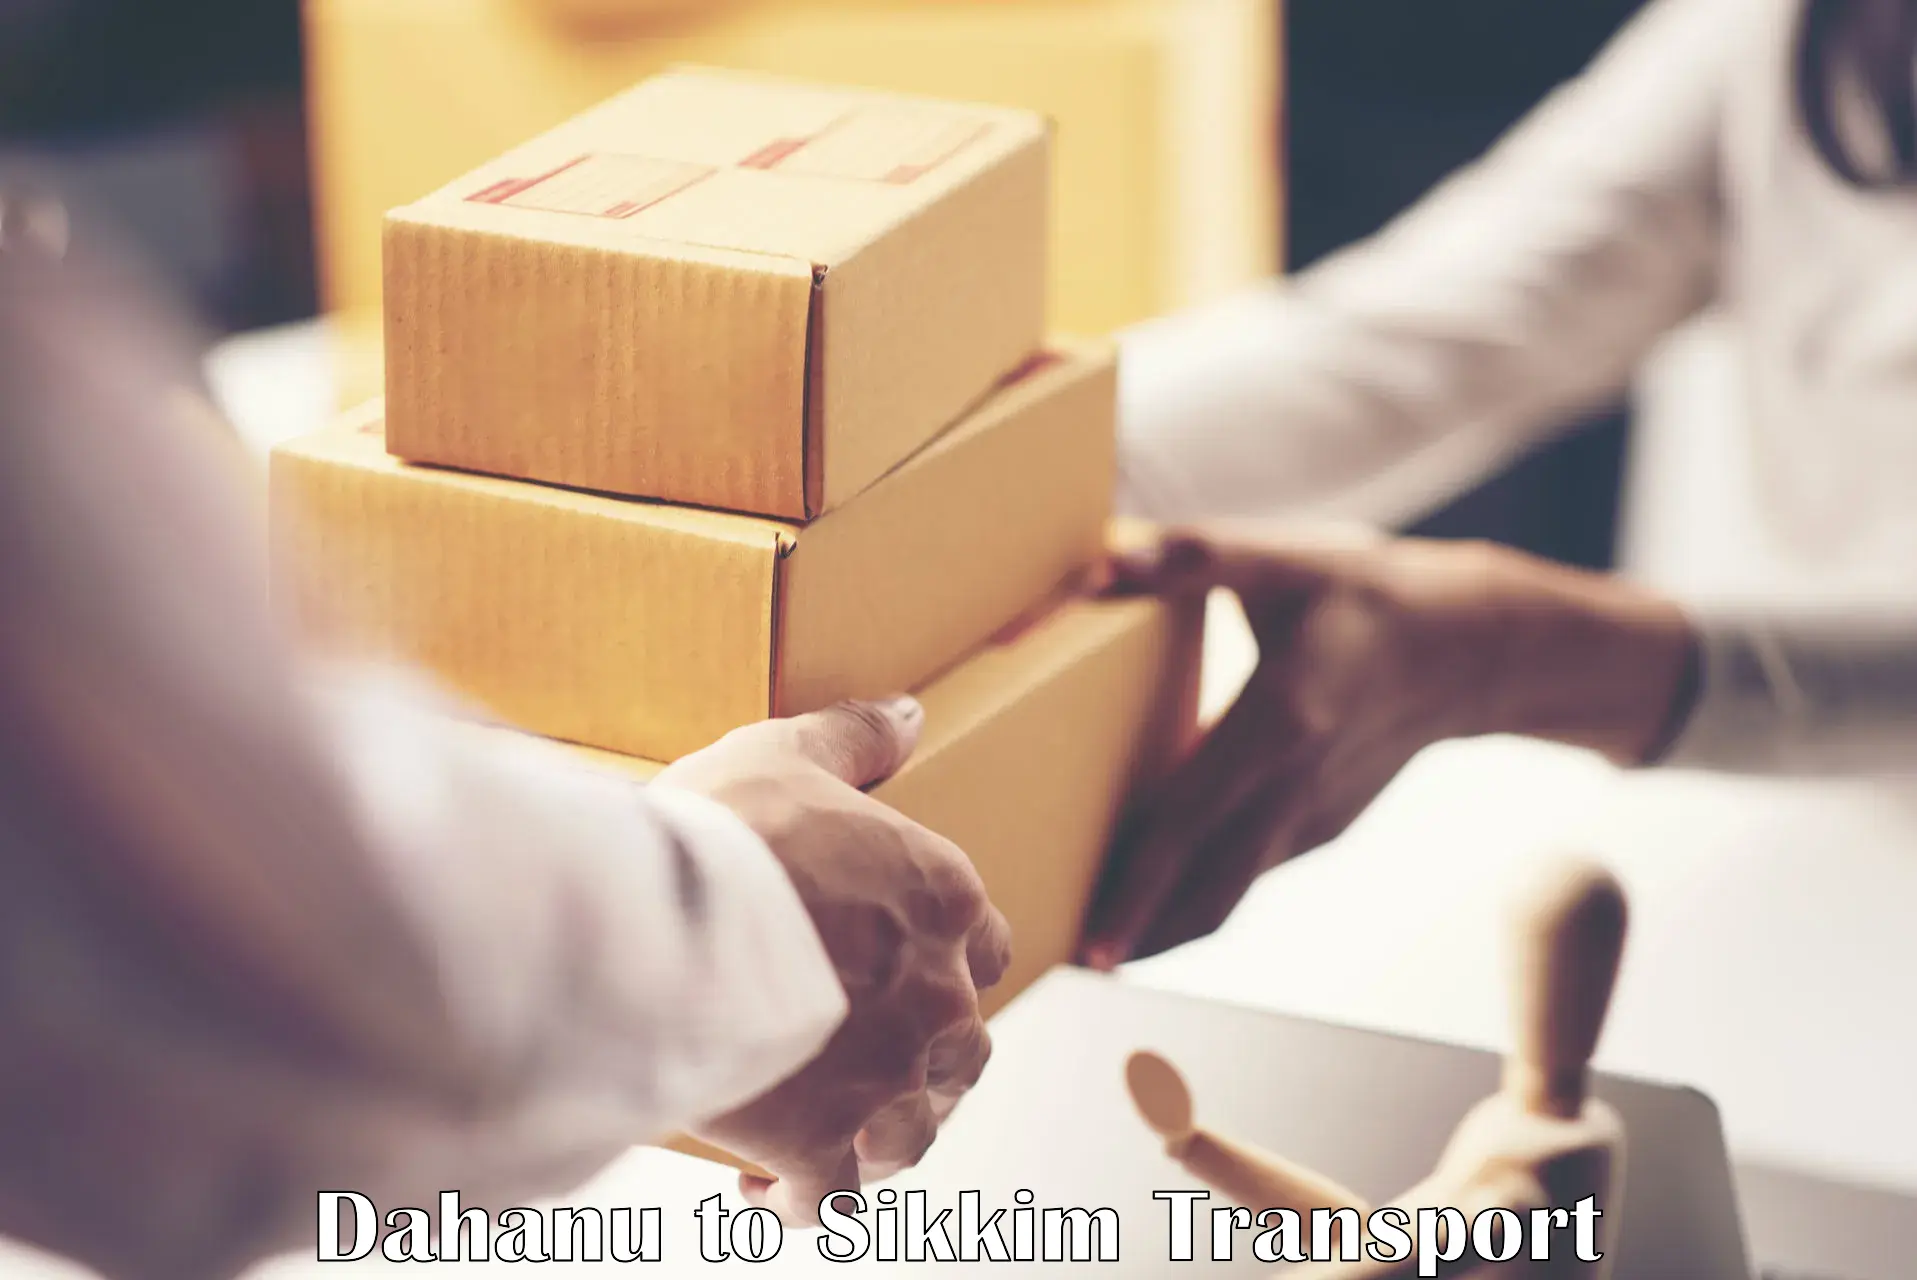 Container transport service Dahanu to Mangan